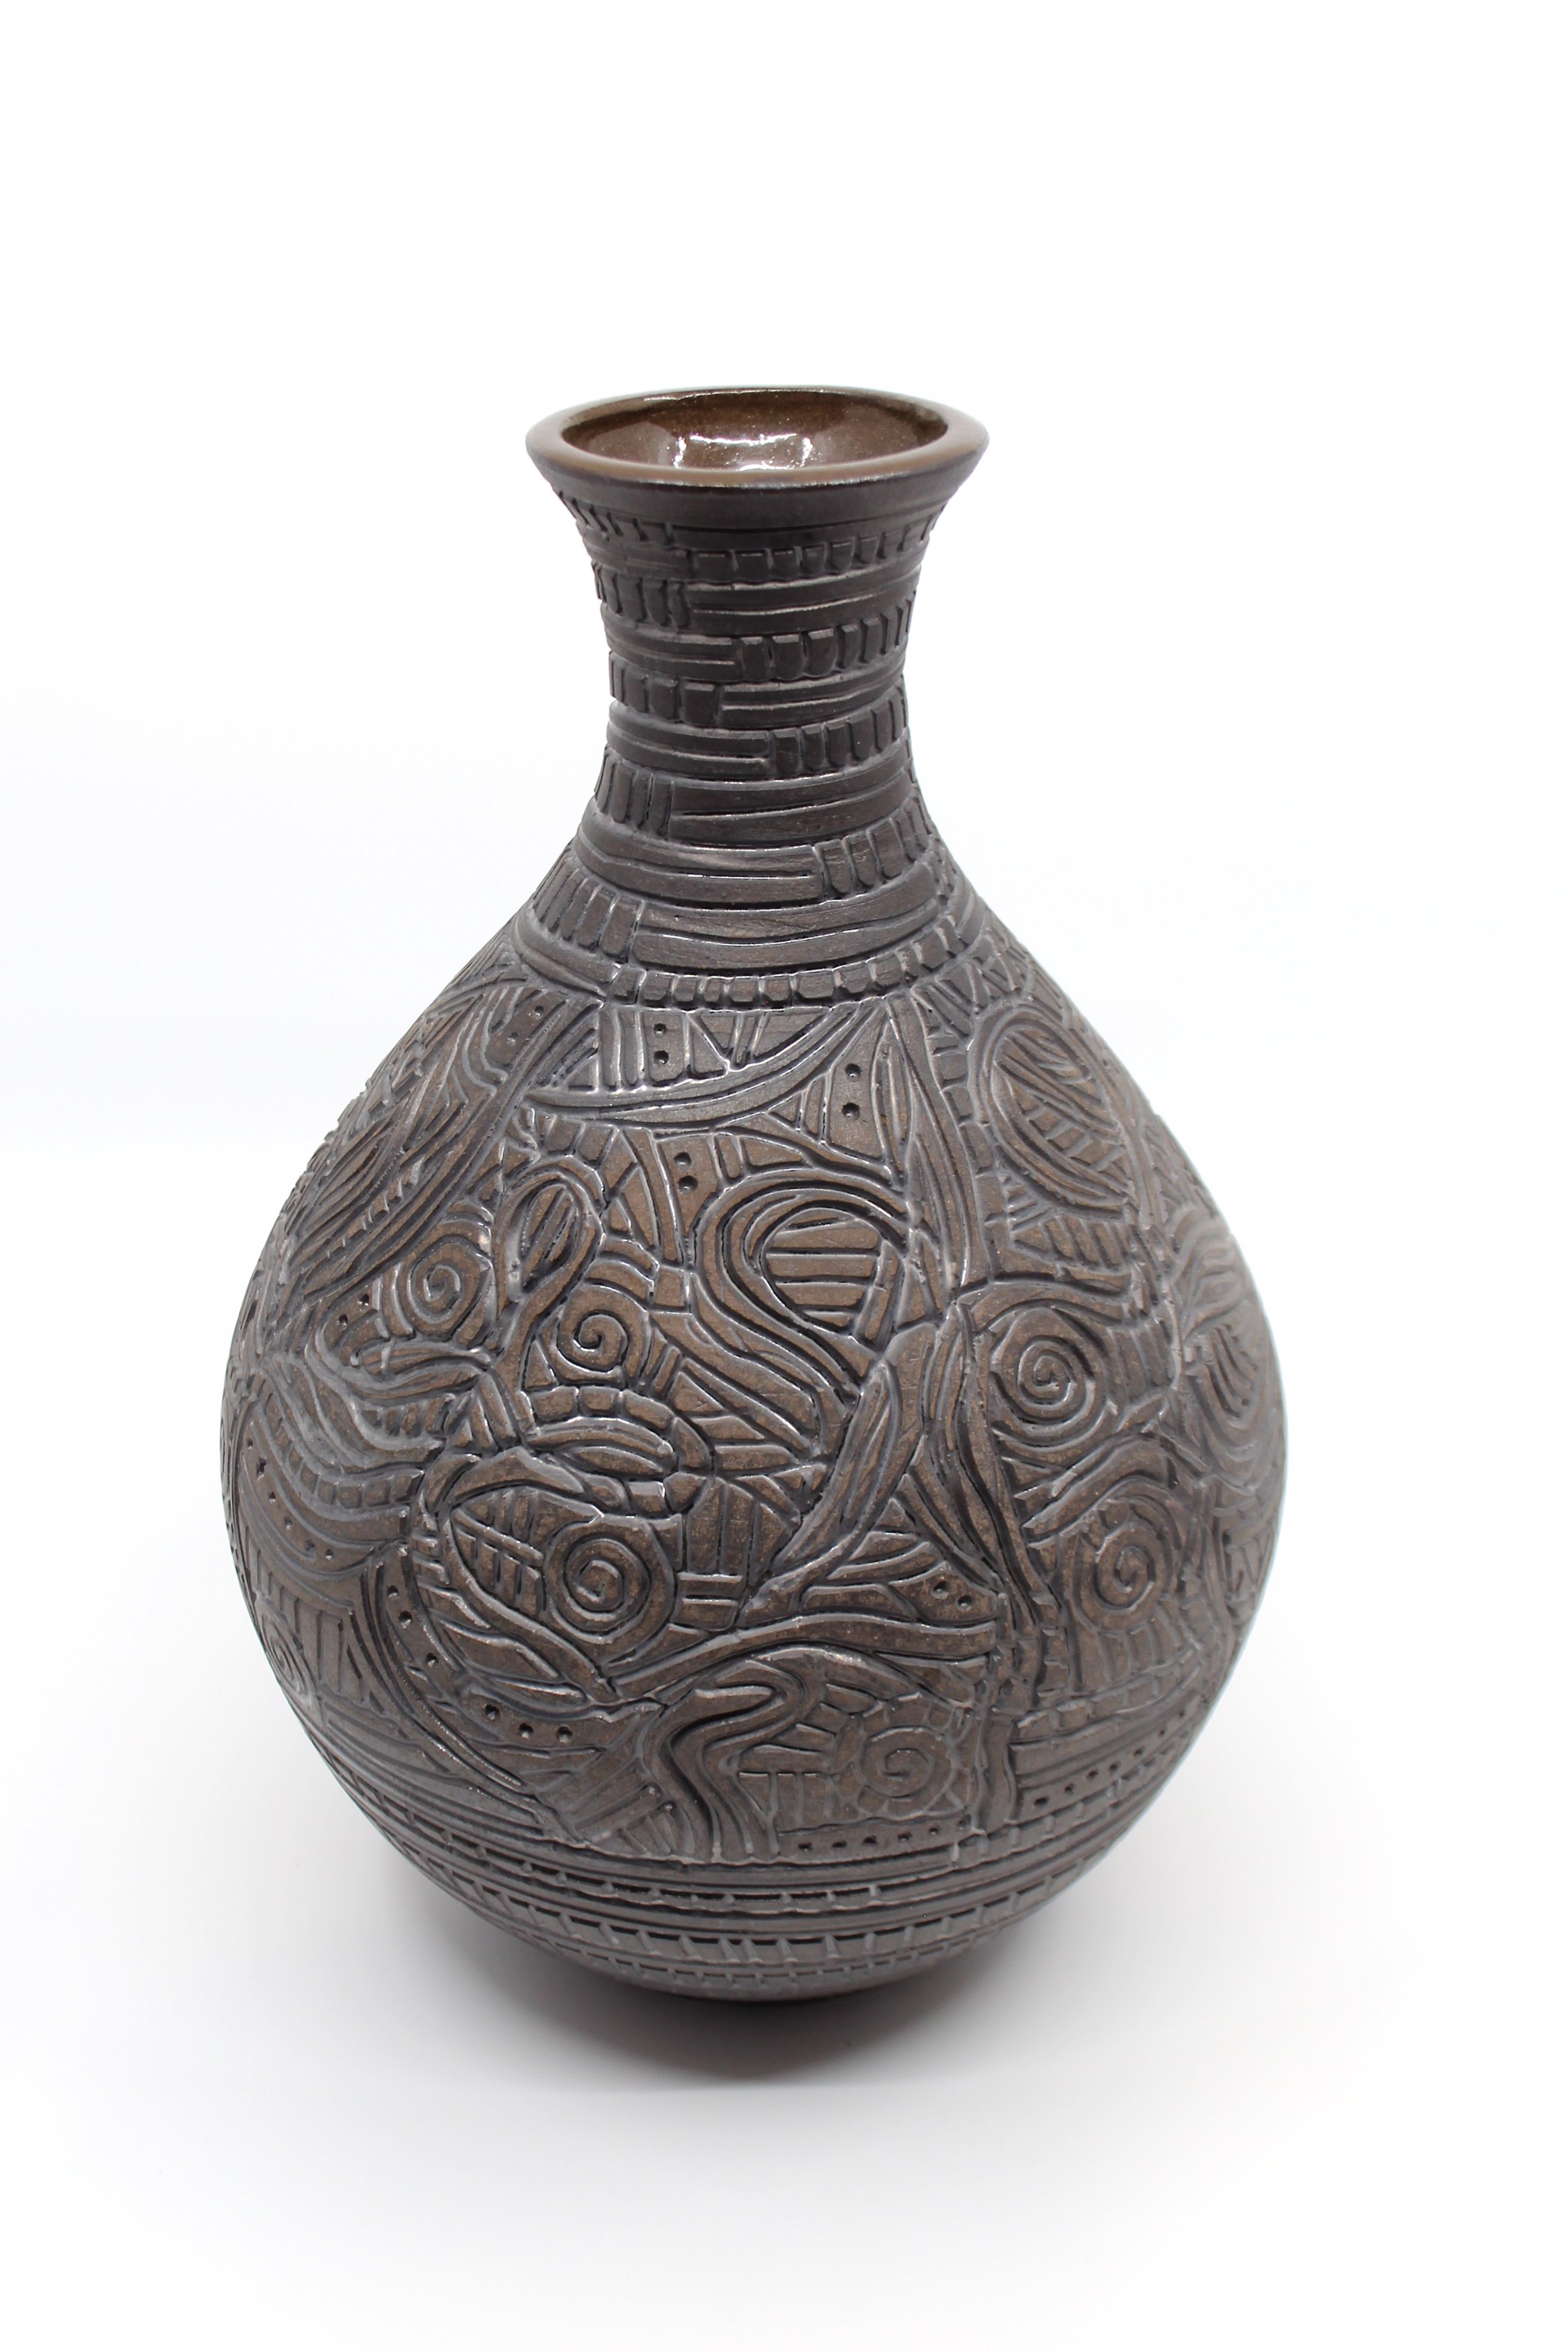 Chocolate Vase IV by Heather Bradley